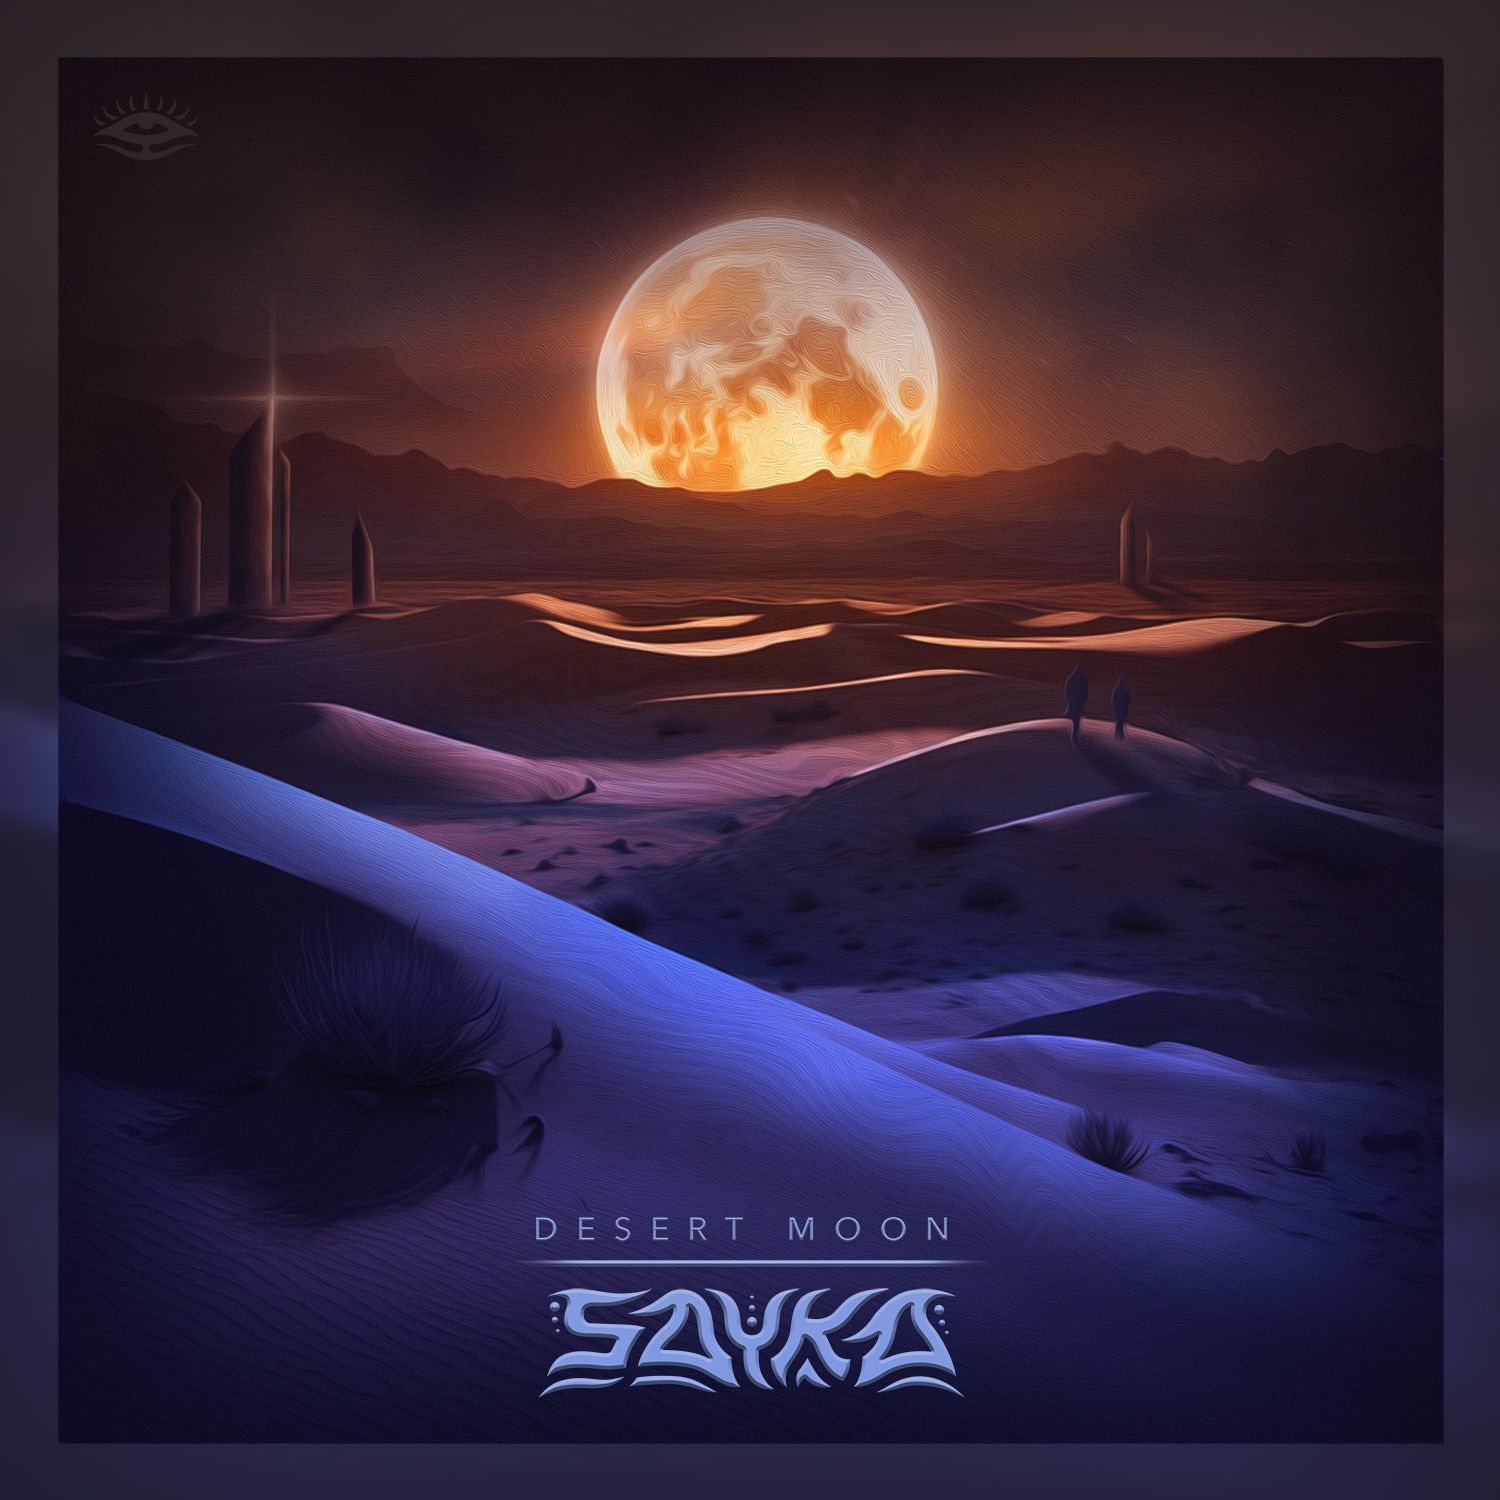 sayka-desert-moon